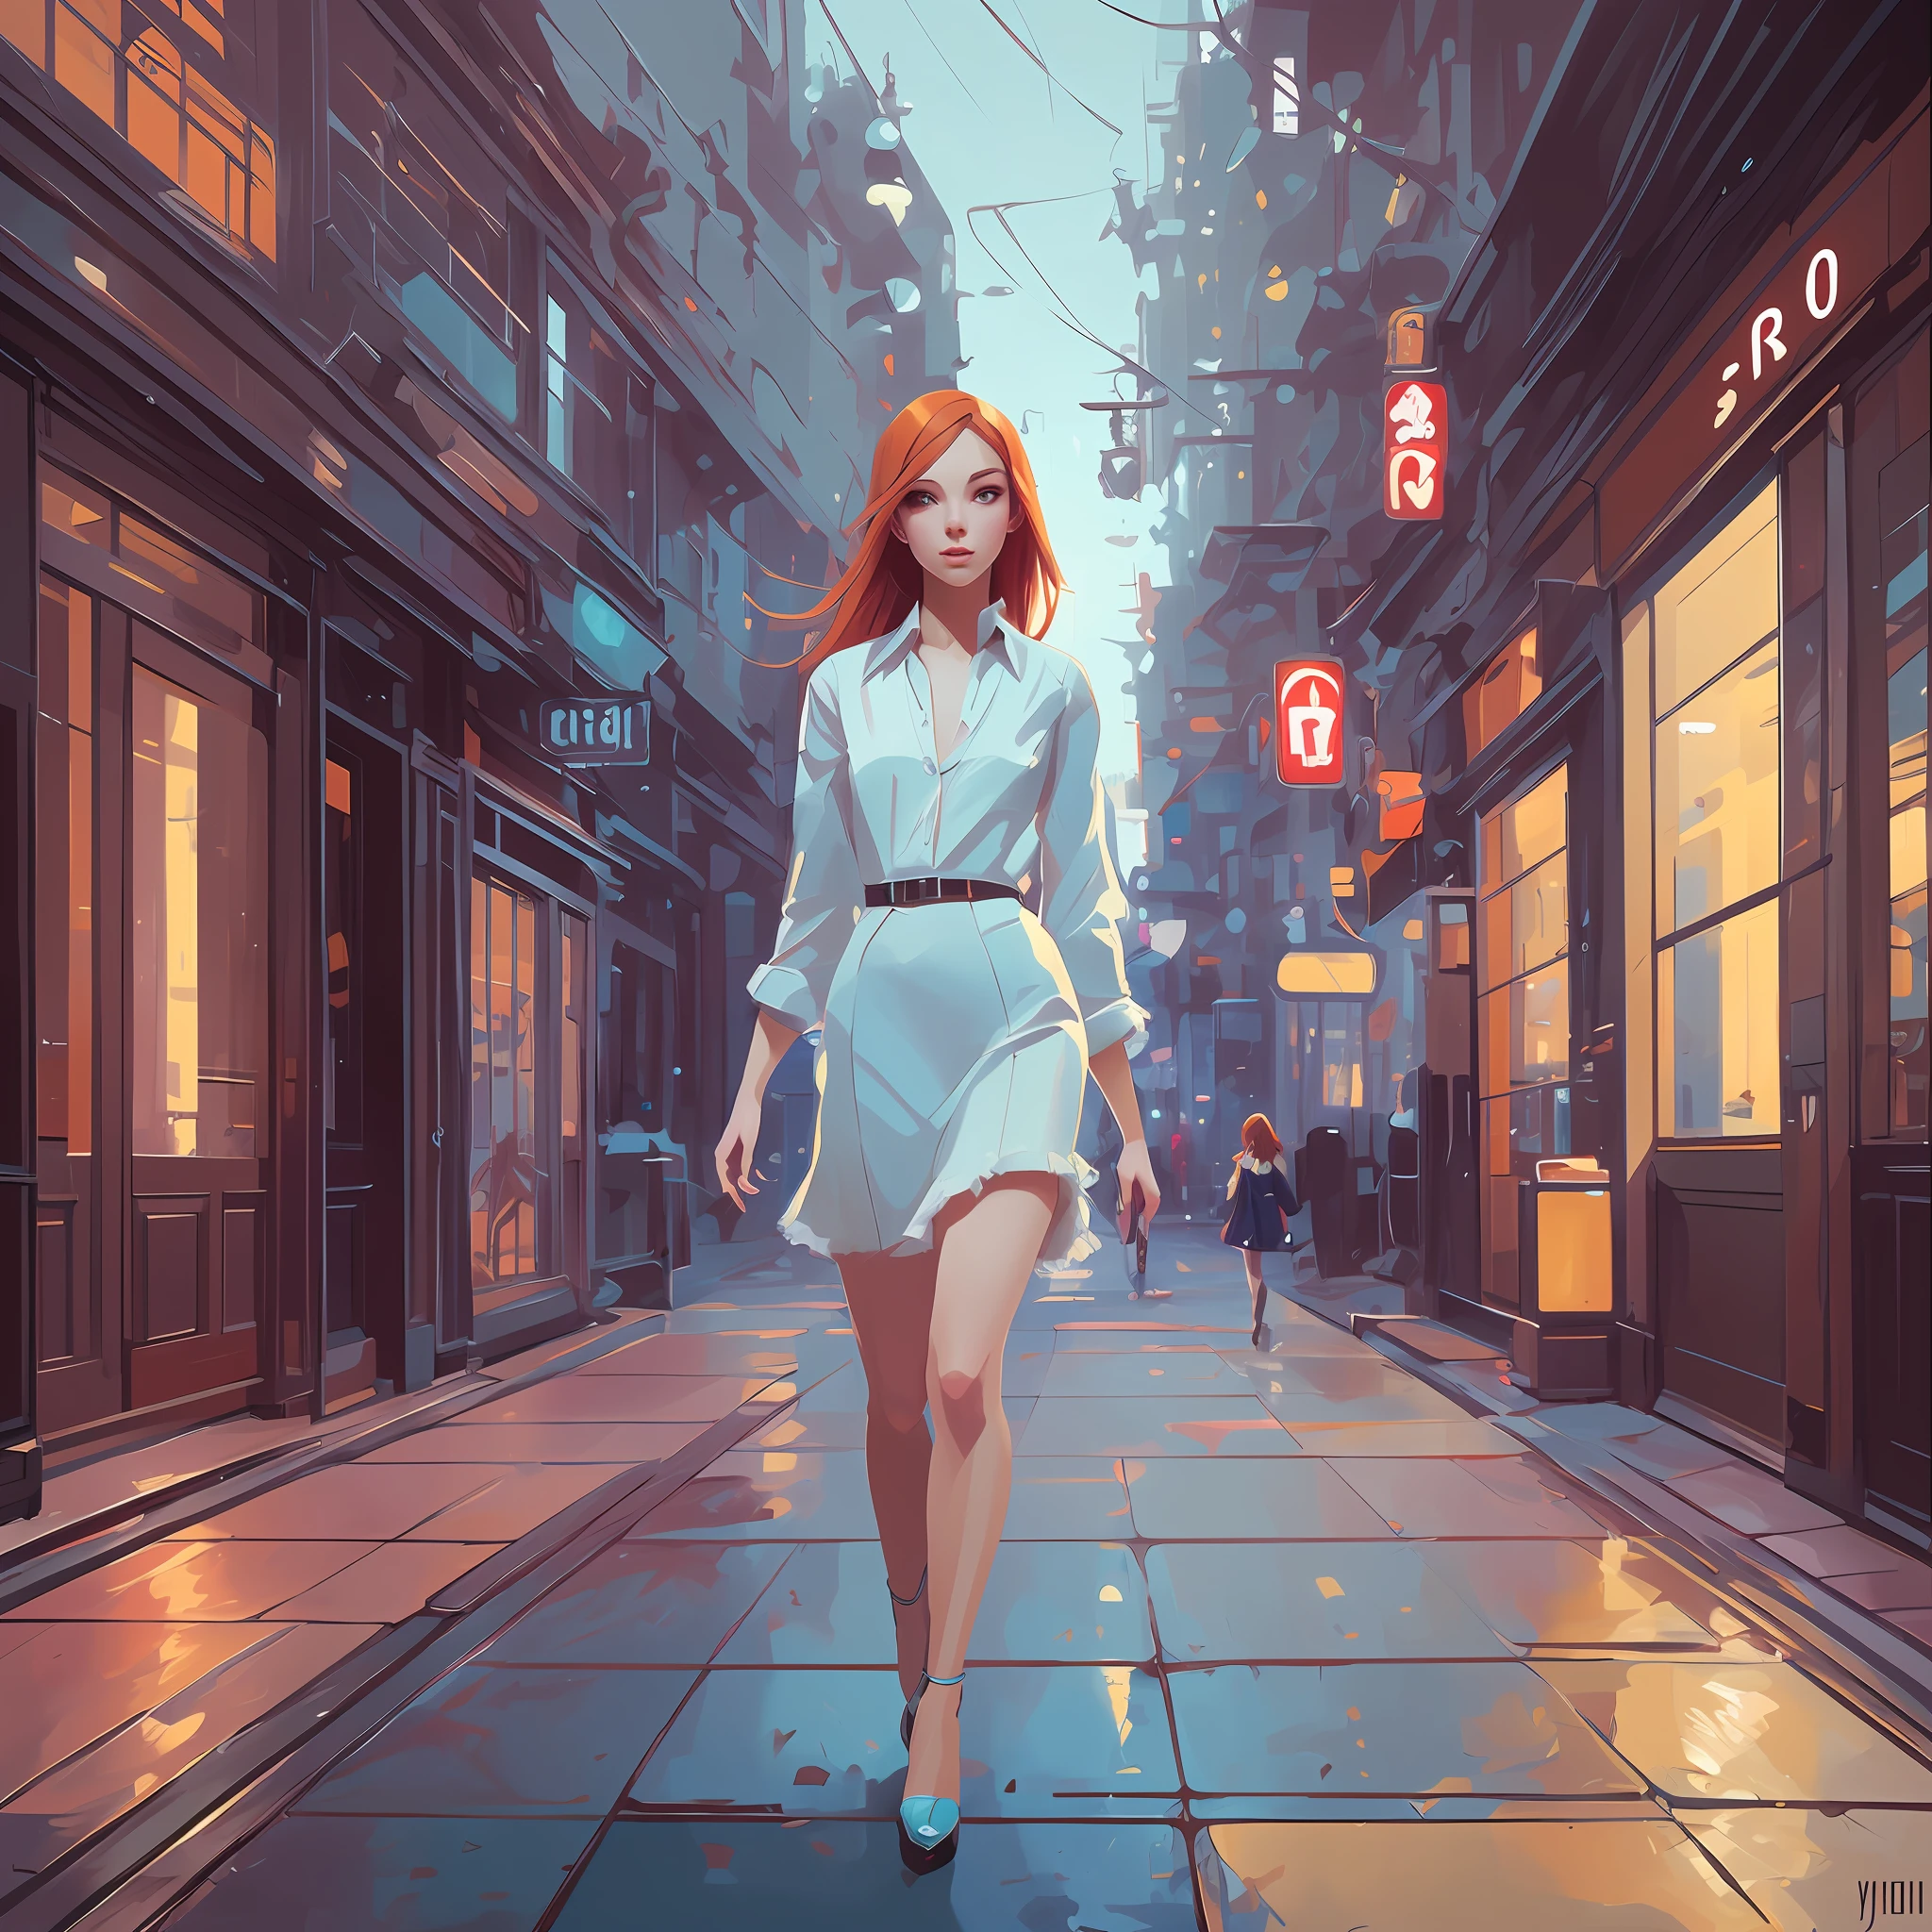 Kunst von Ilya Kuvshinov, Kunst von Jeremy Mann eine ultra süße rothaarige flauschige junge Frau, zu Fuß in der Stadt, ein hyper ultra blasses hellblaues Auge, Kunst von Ilya Kuvshinov, strahlende Haut, durchscheinende Haut